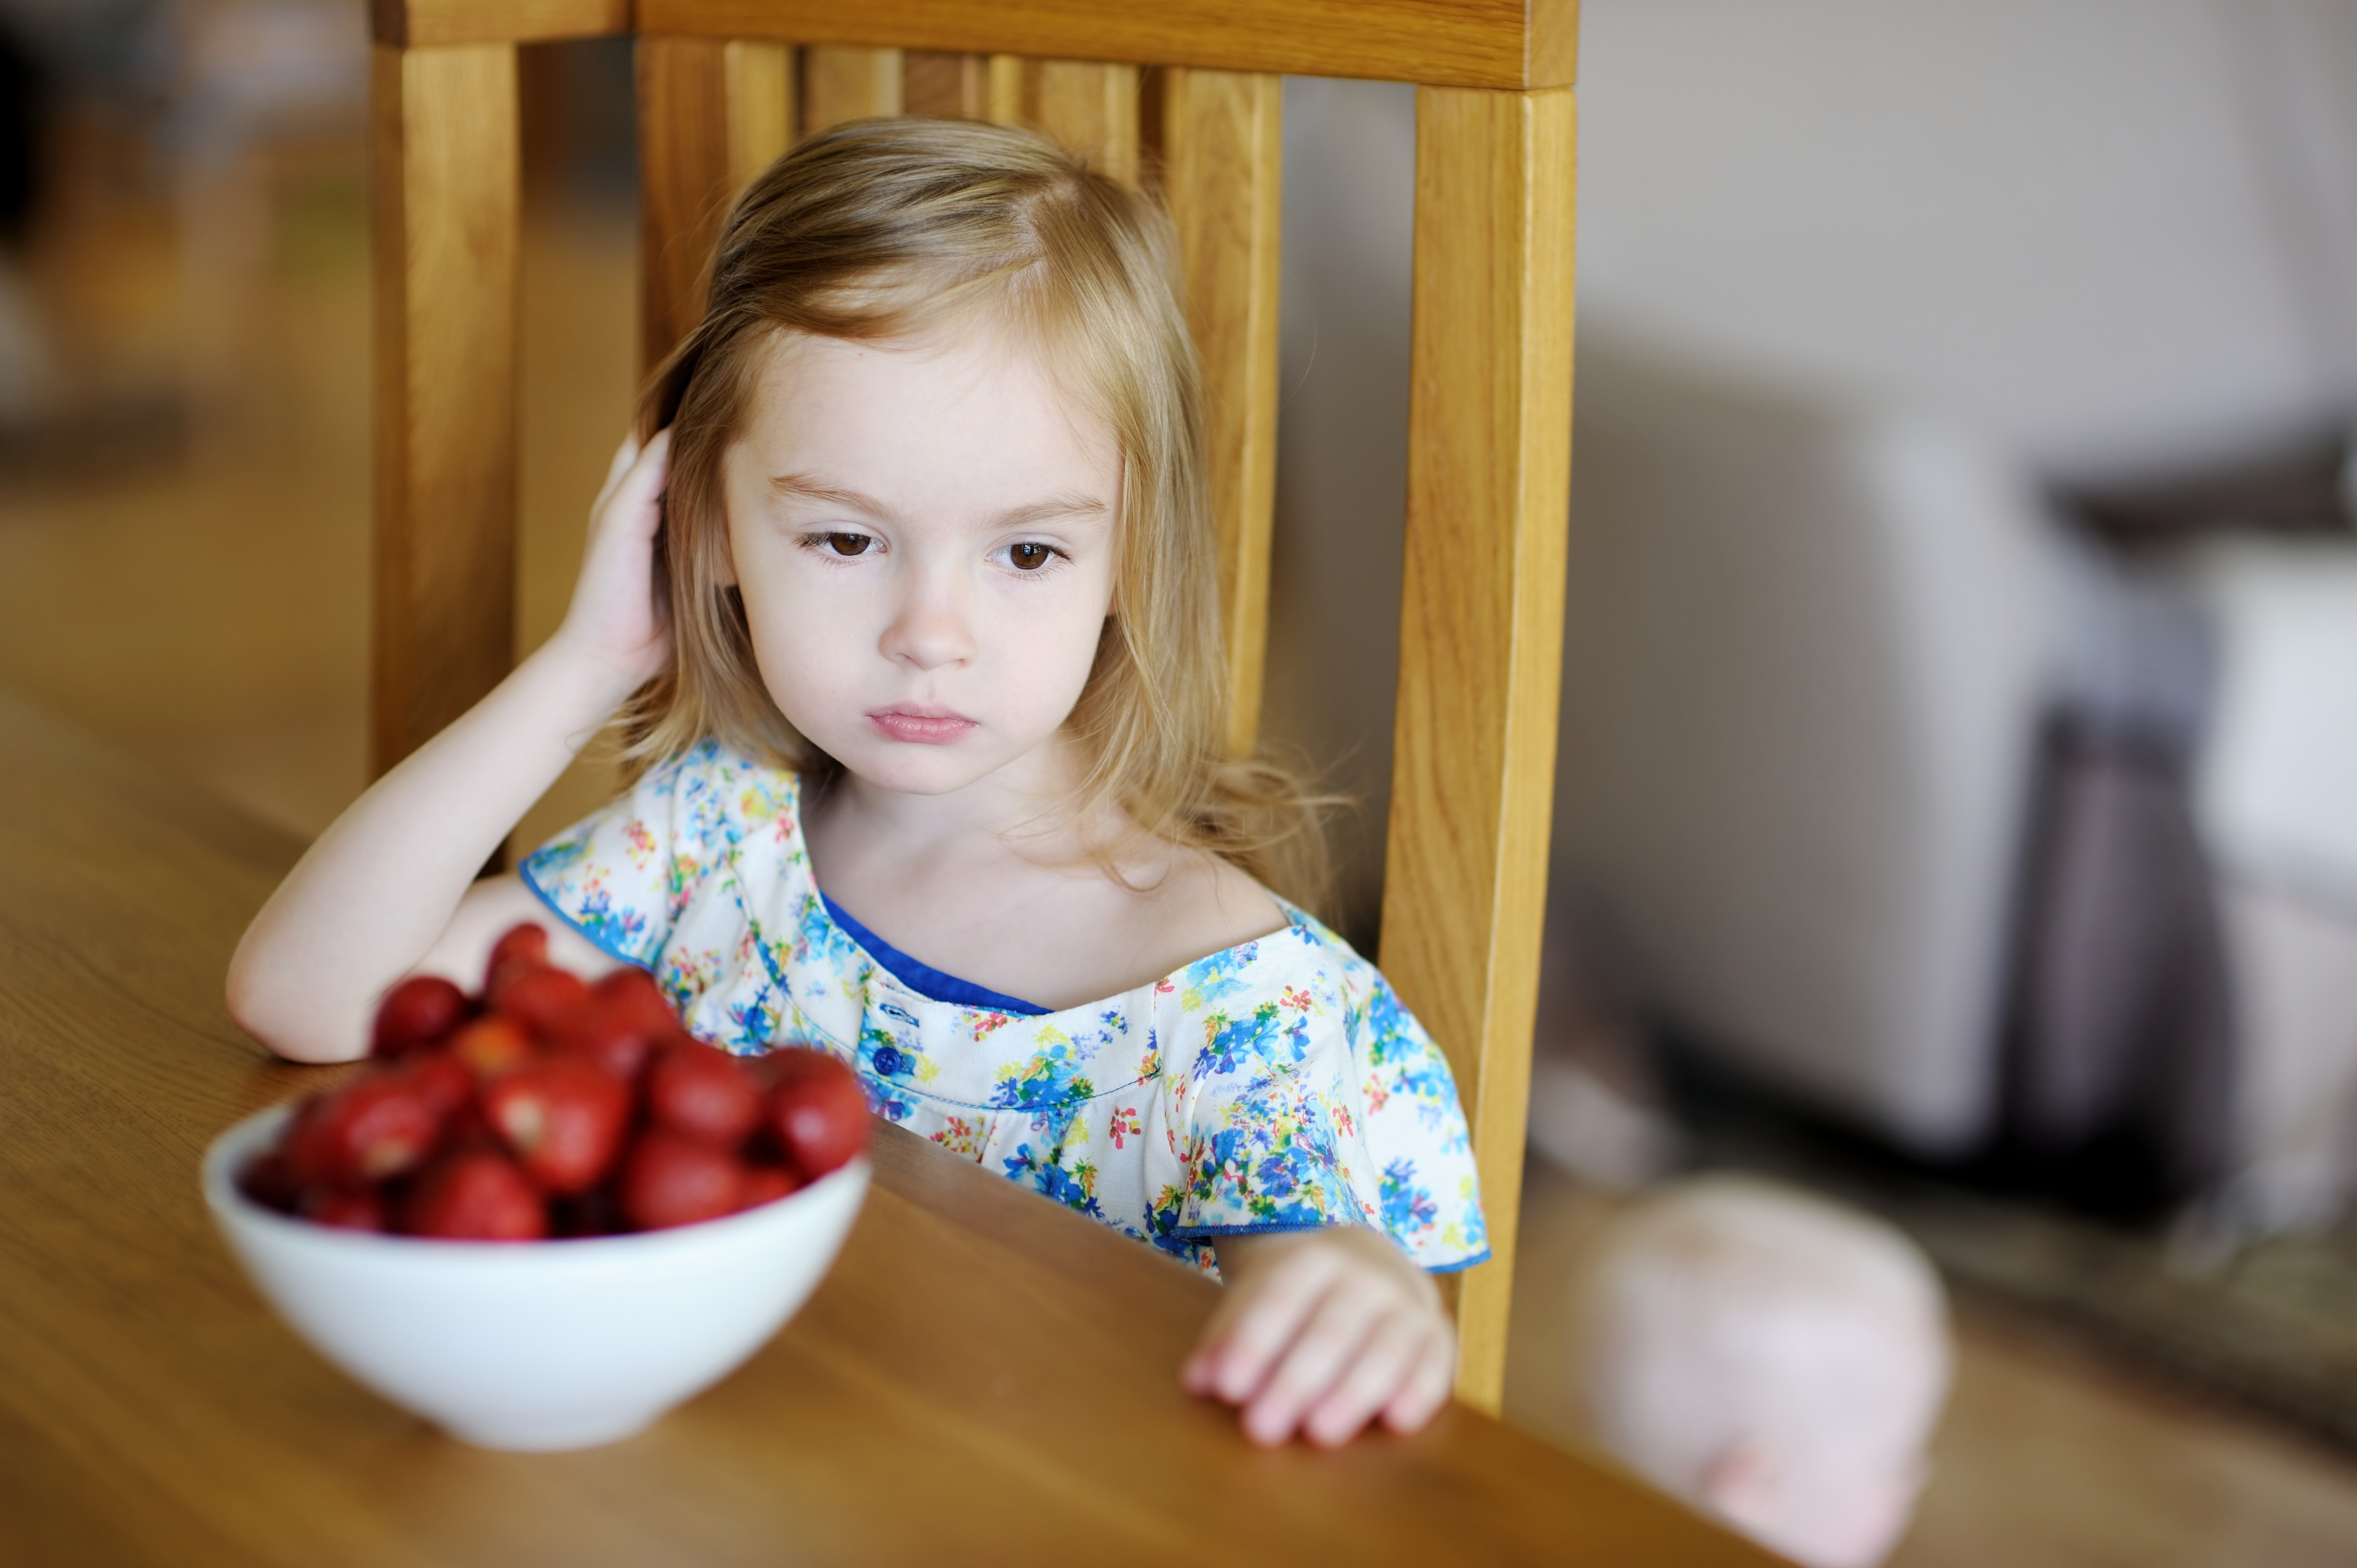 Kleines Mädchen mit traurigem Blick und einer Schale Erdbeeren vor sich am Esstisch | Quelle: Shutterstock